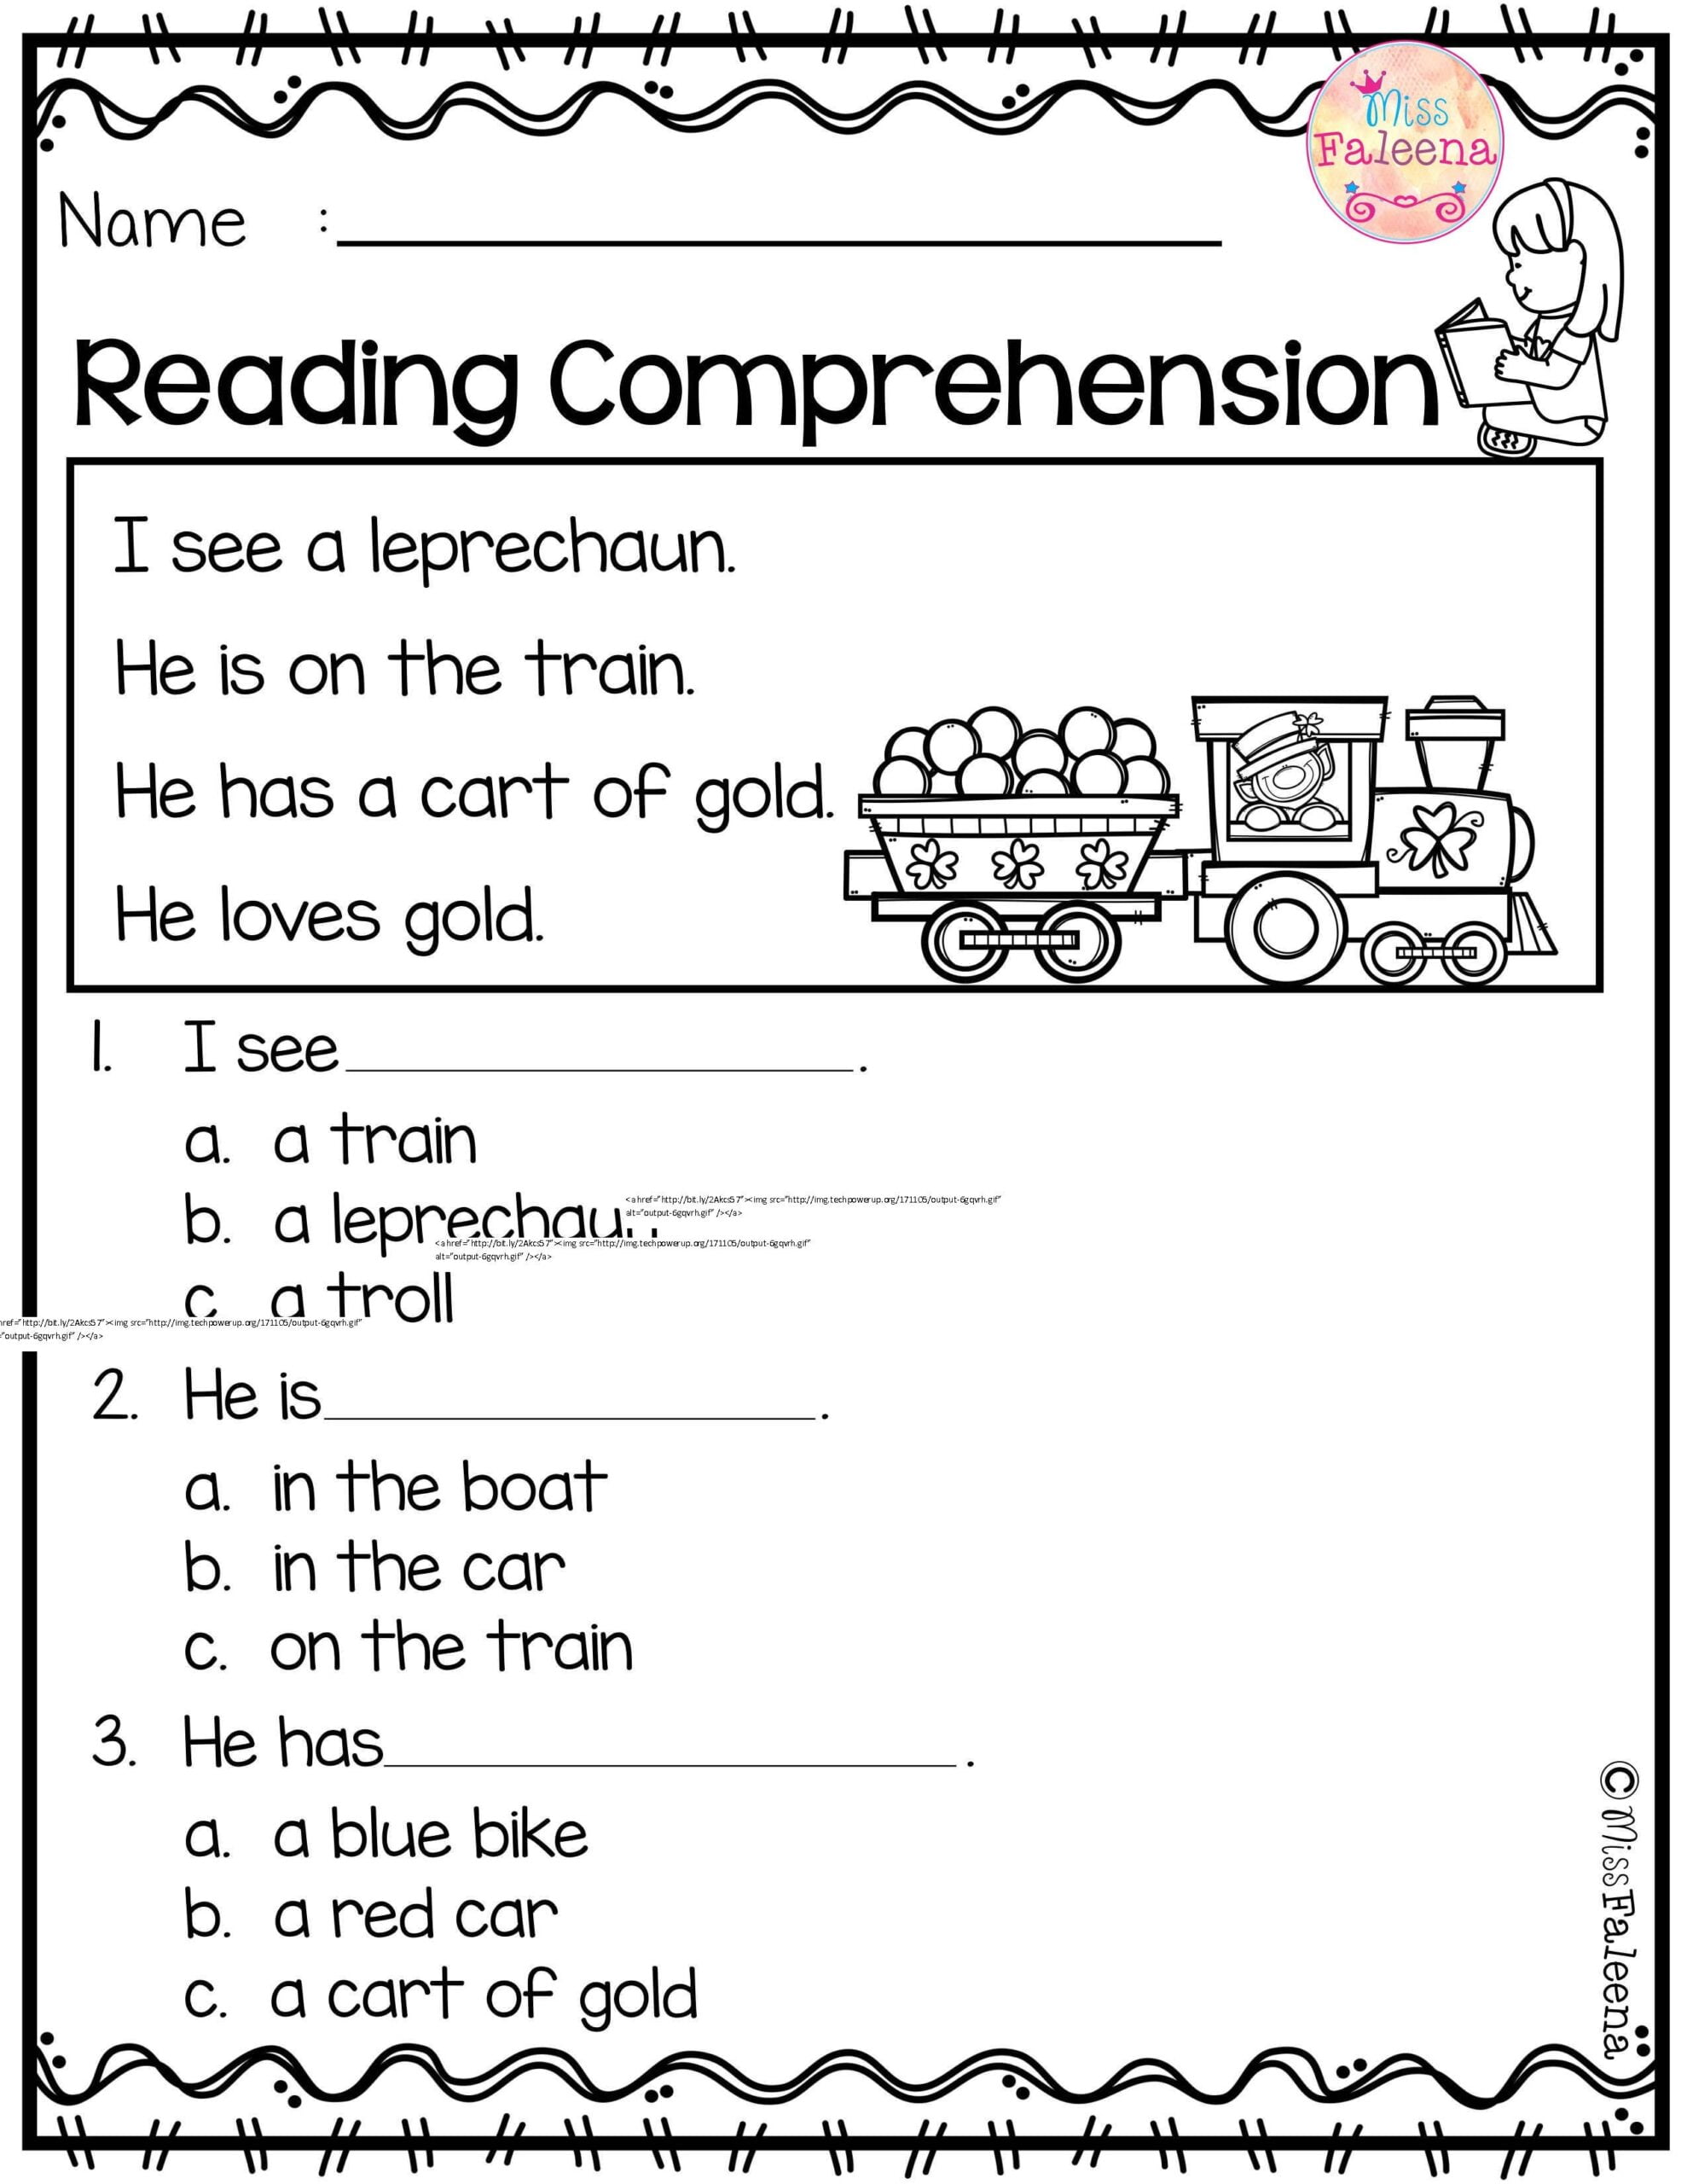 Kindergarten Reading Comprehension Printable Worksheets